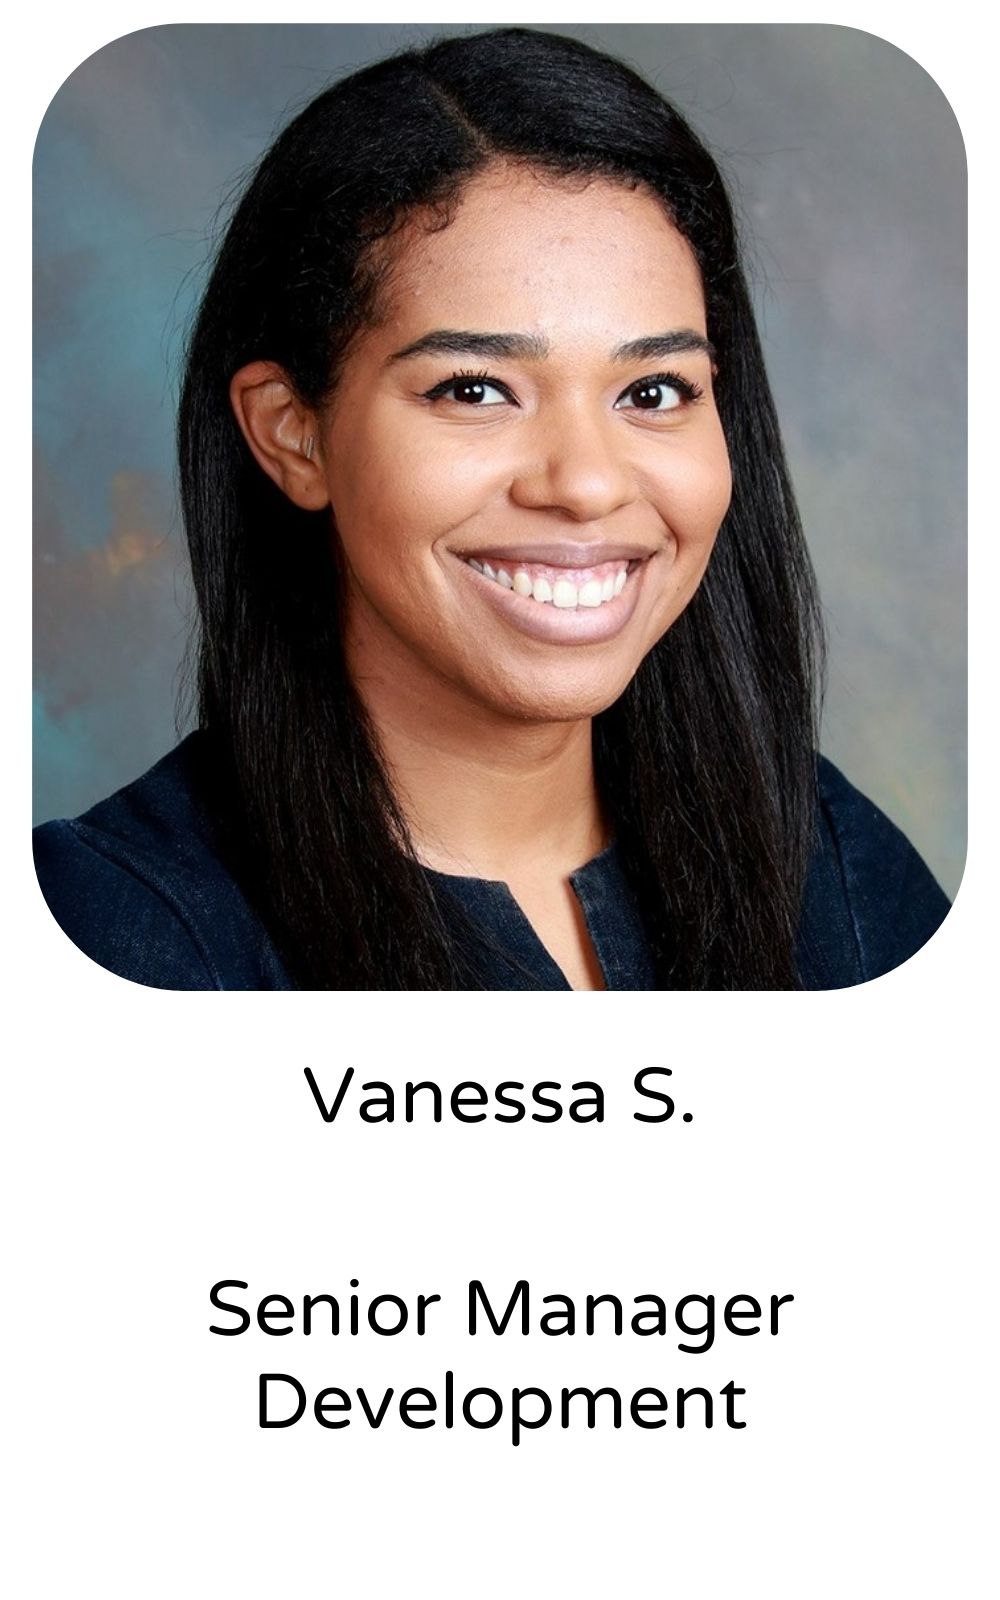 Vanessa S, Senior Manager, Development